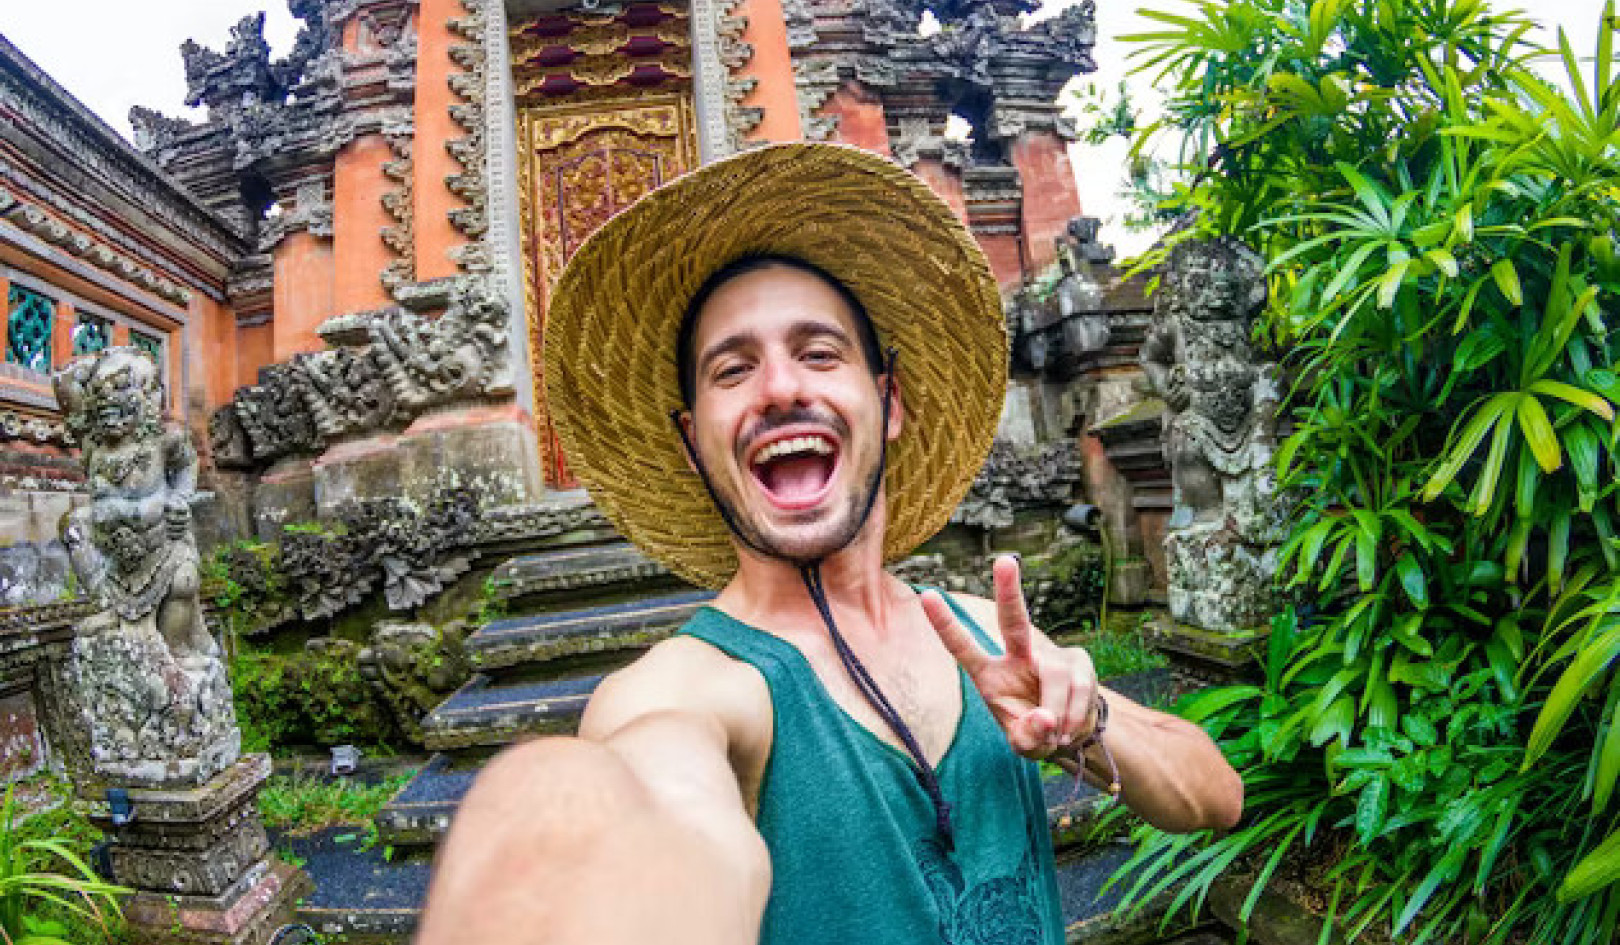 Влияние Instagram на поведение туристов: как путешествовать уважительно